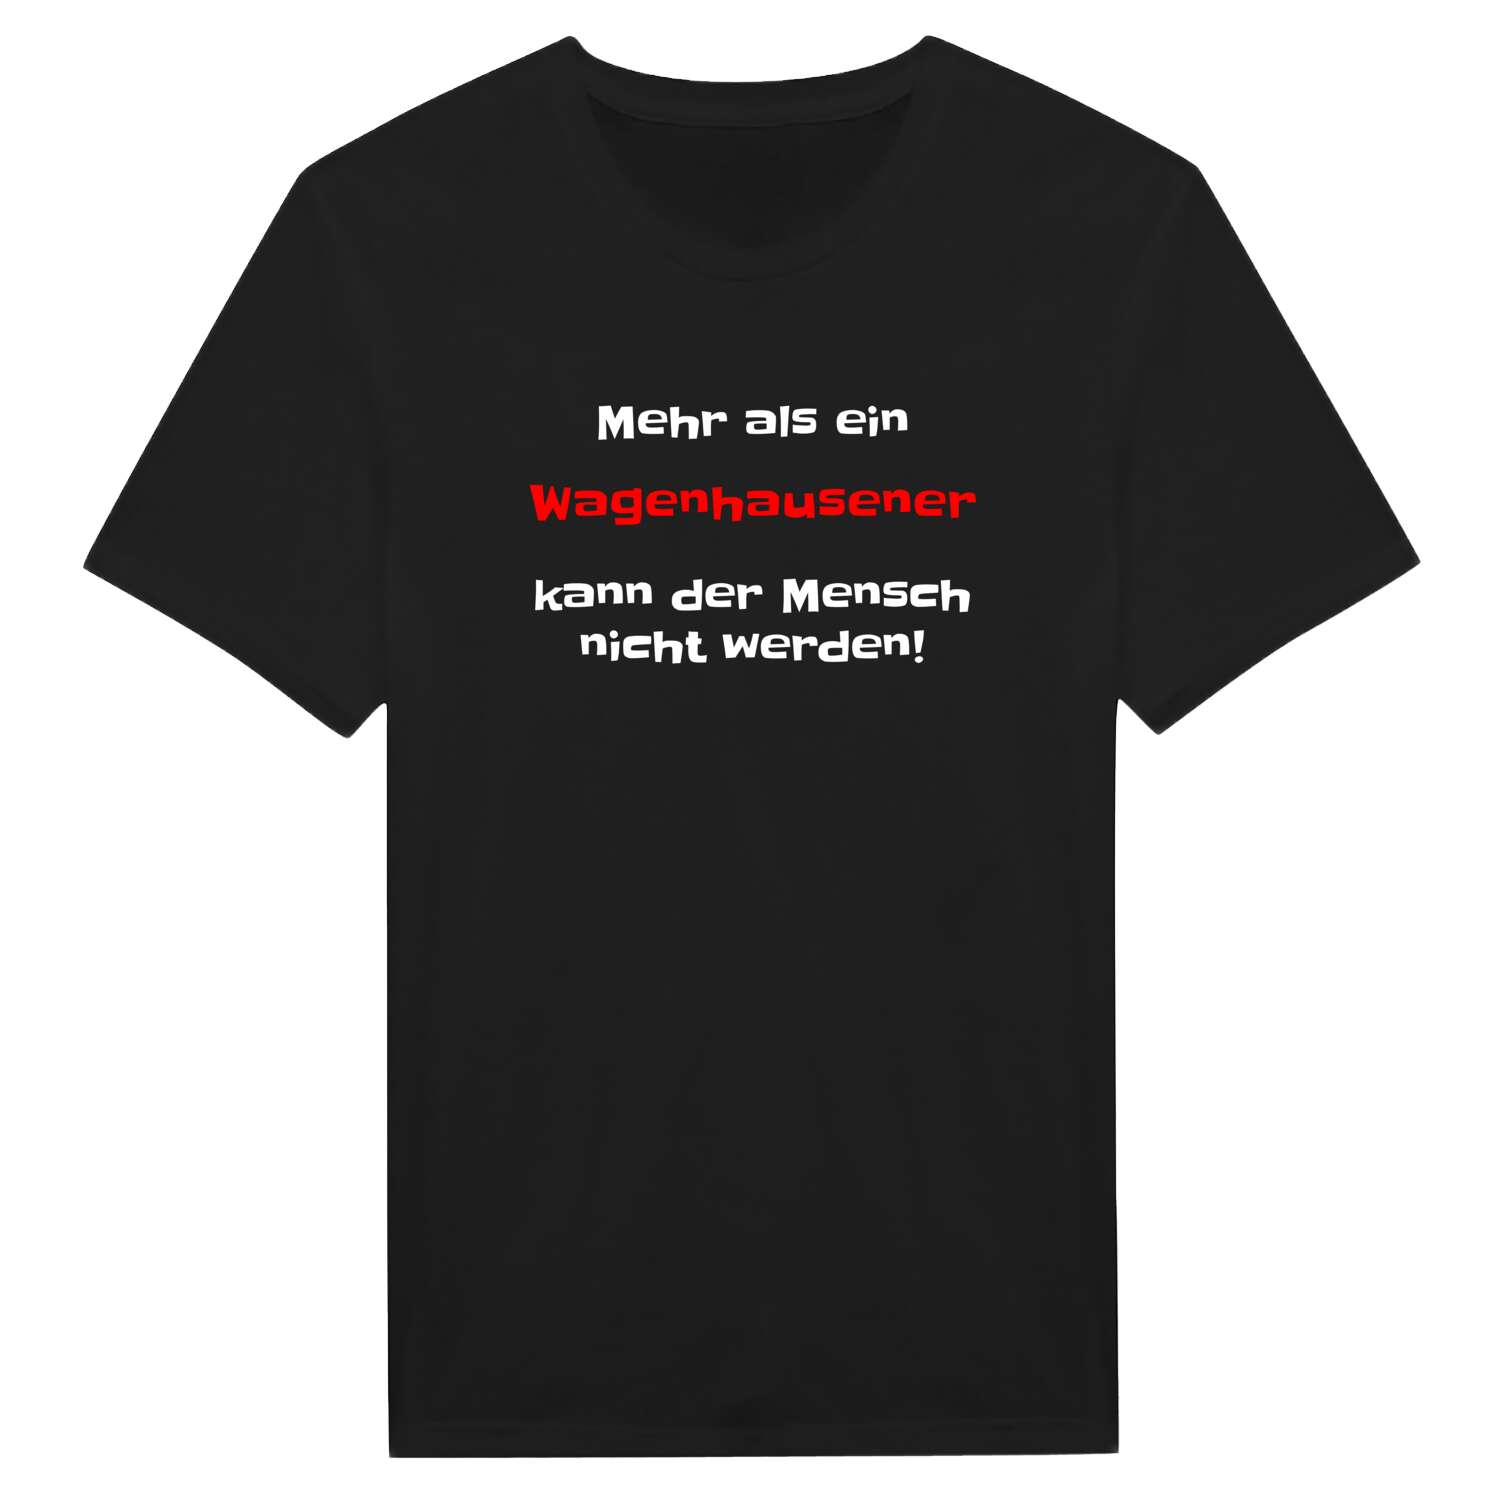 Wagenhausen T-Shirt »Mehr als ein«